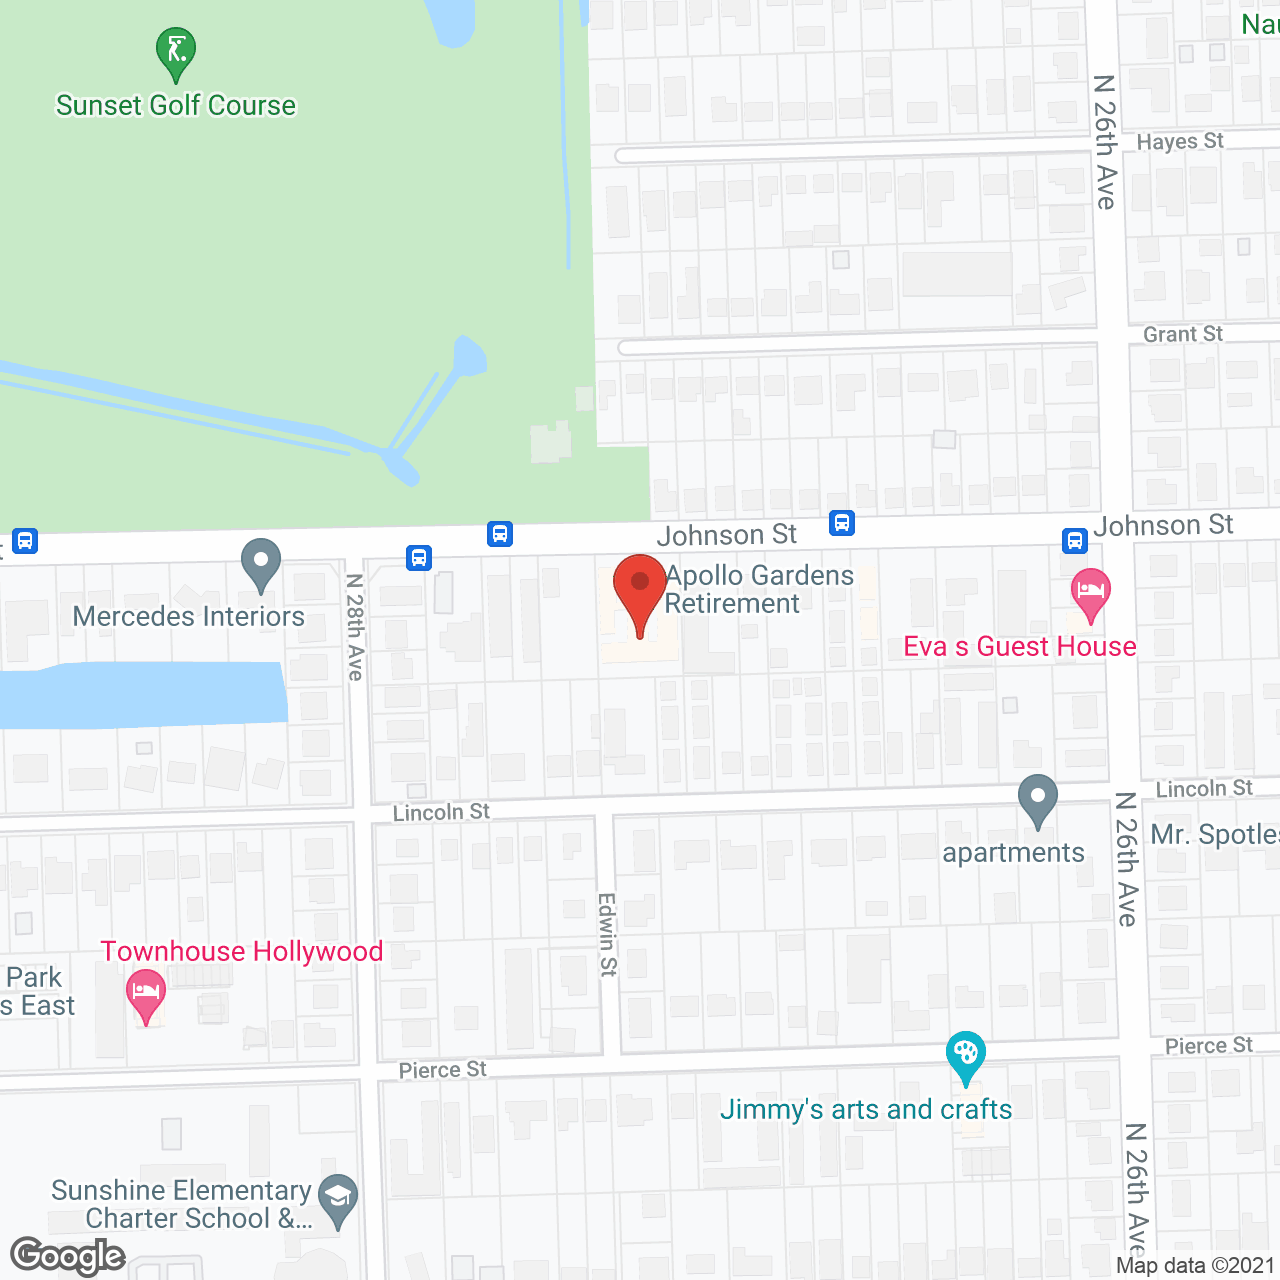 Apollo Gardens in google map